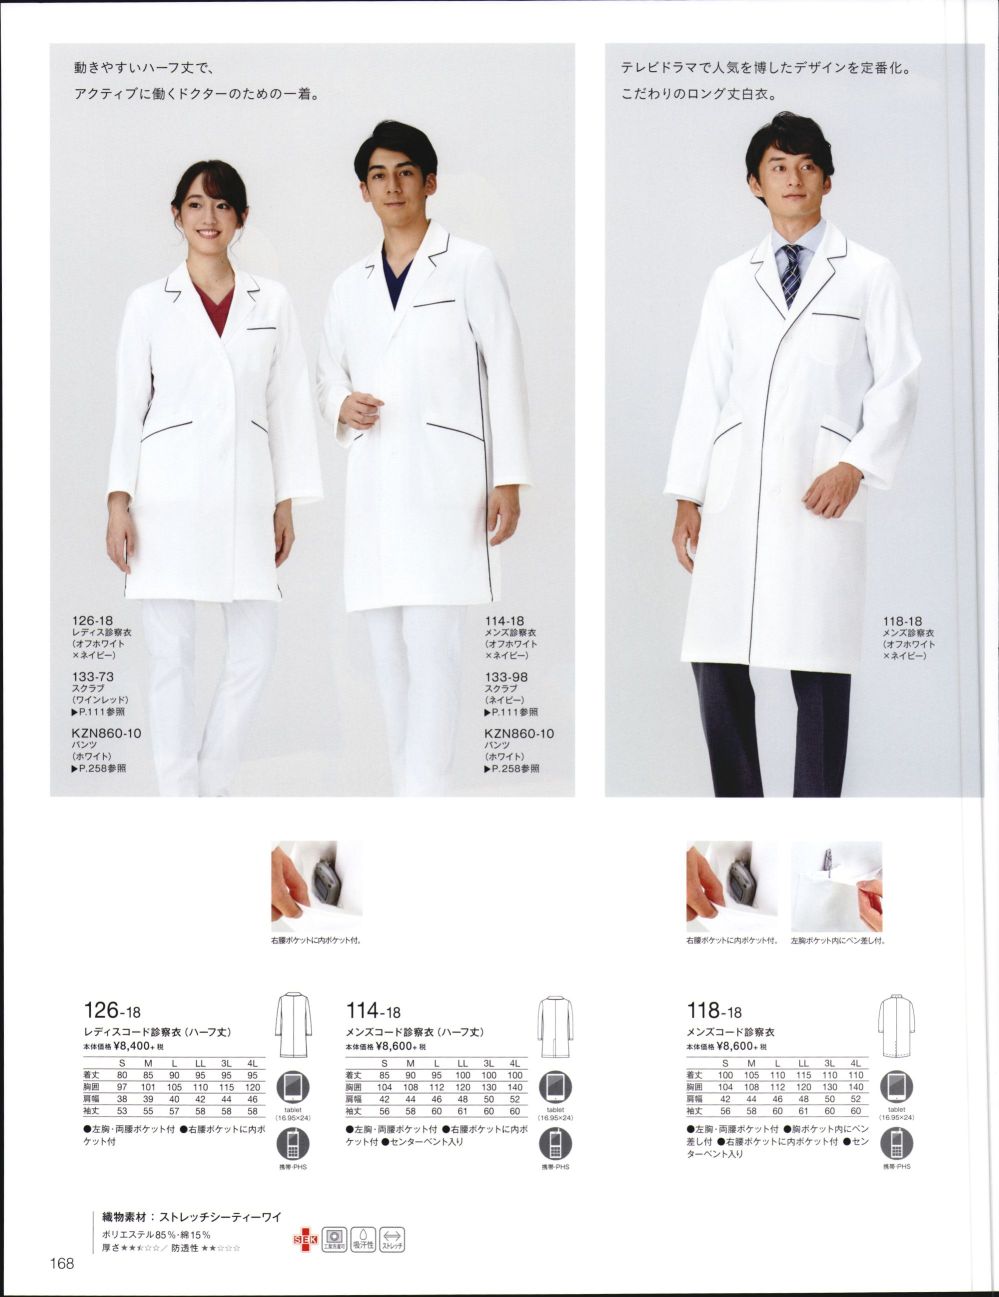 驚くべき価格 KAZEN メンズコート診察衣S型長袖 オフホワイト×ネイビー 118-18 ドクターコート 